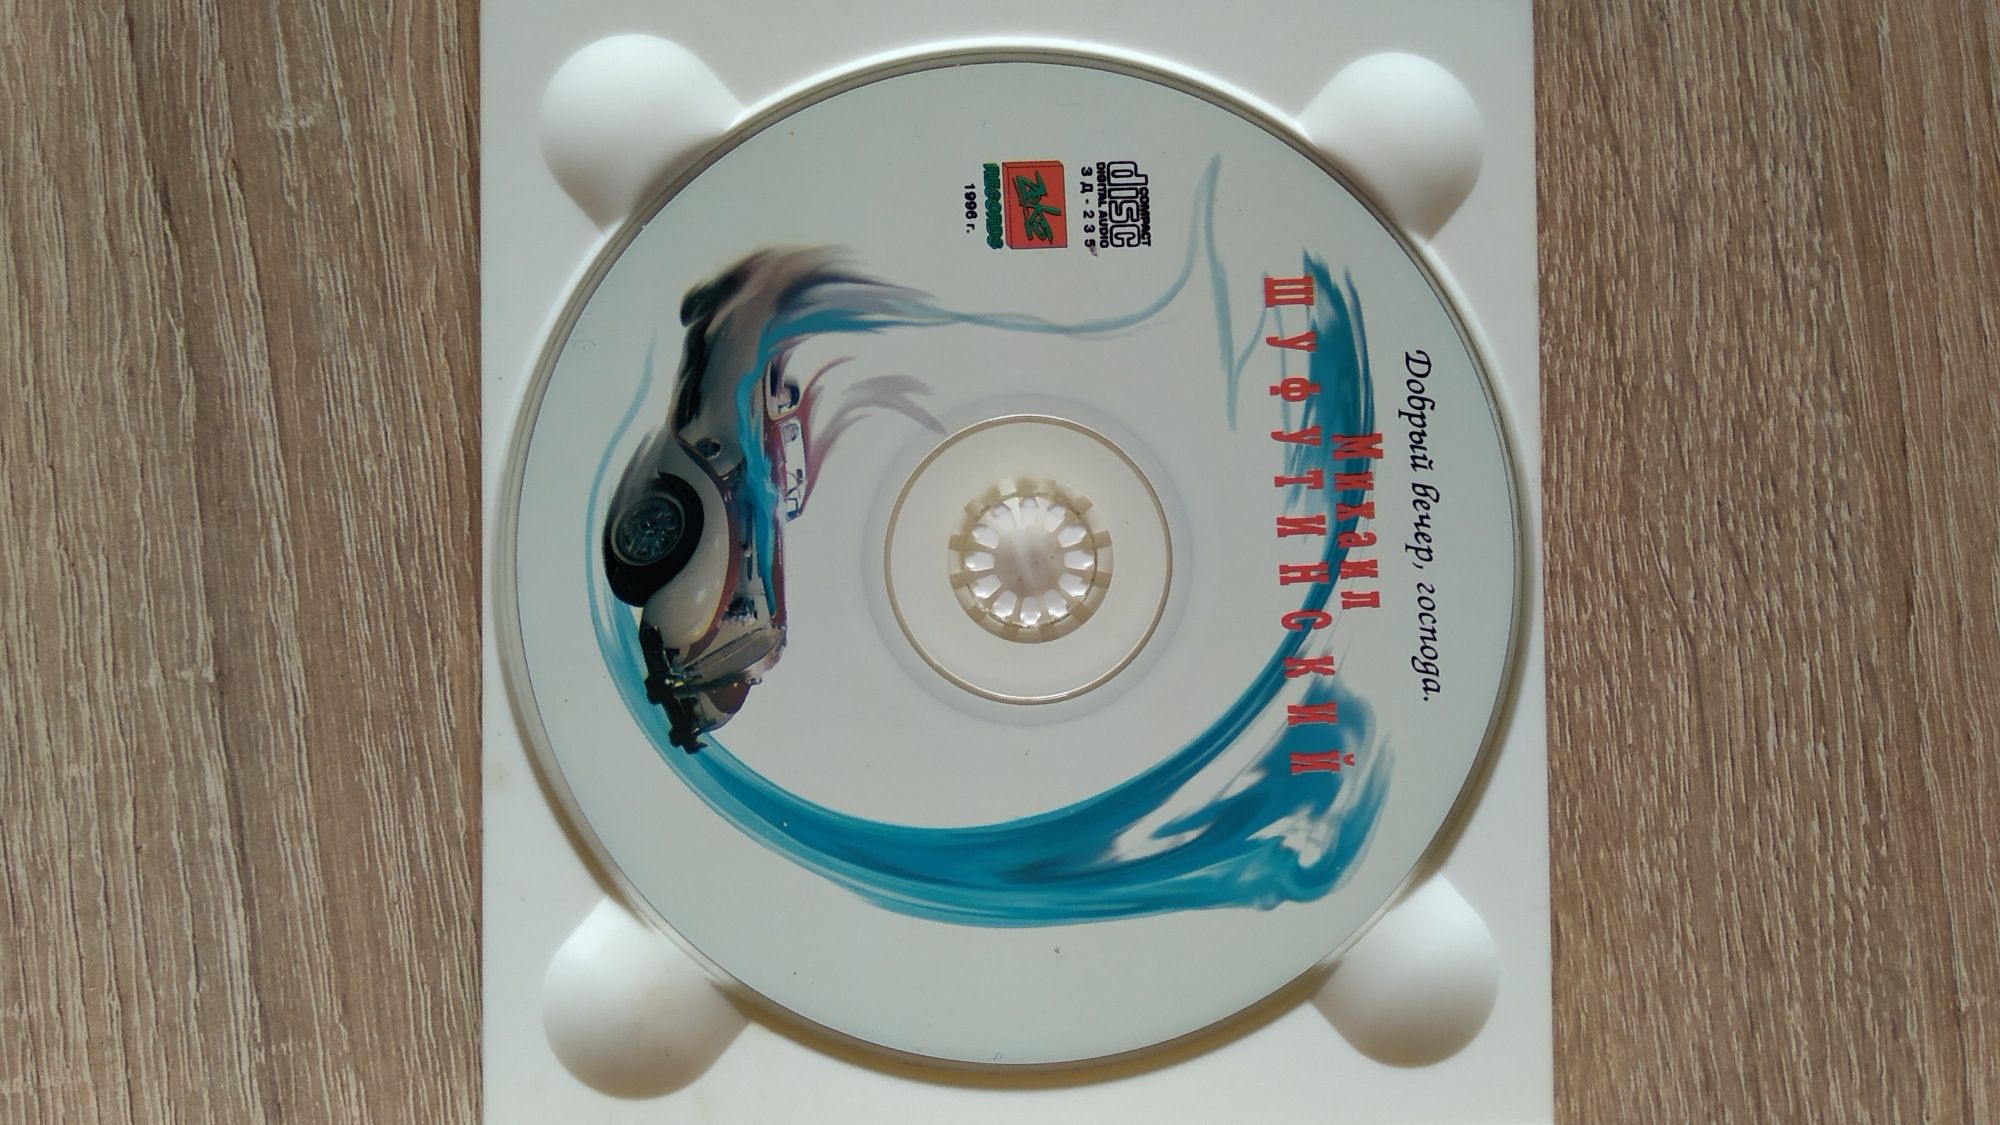 CD Михаил Шуфутинский Добрый вечер господа 1996 шансон СД диски музыка